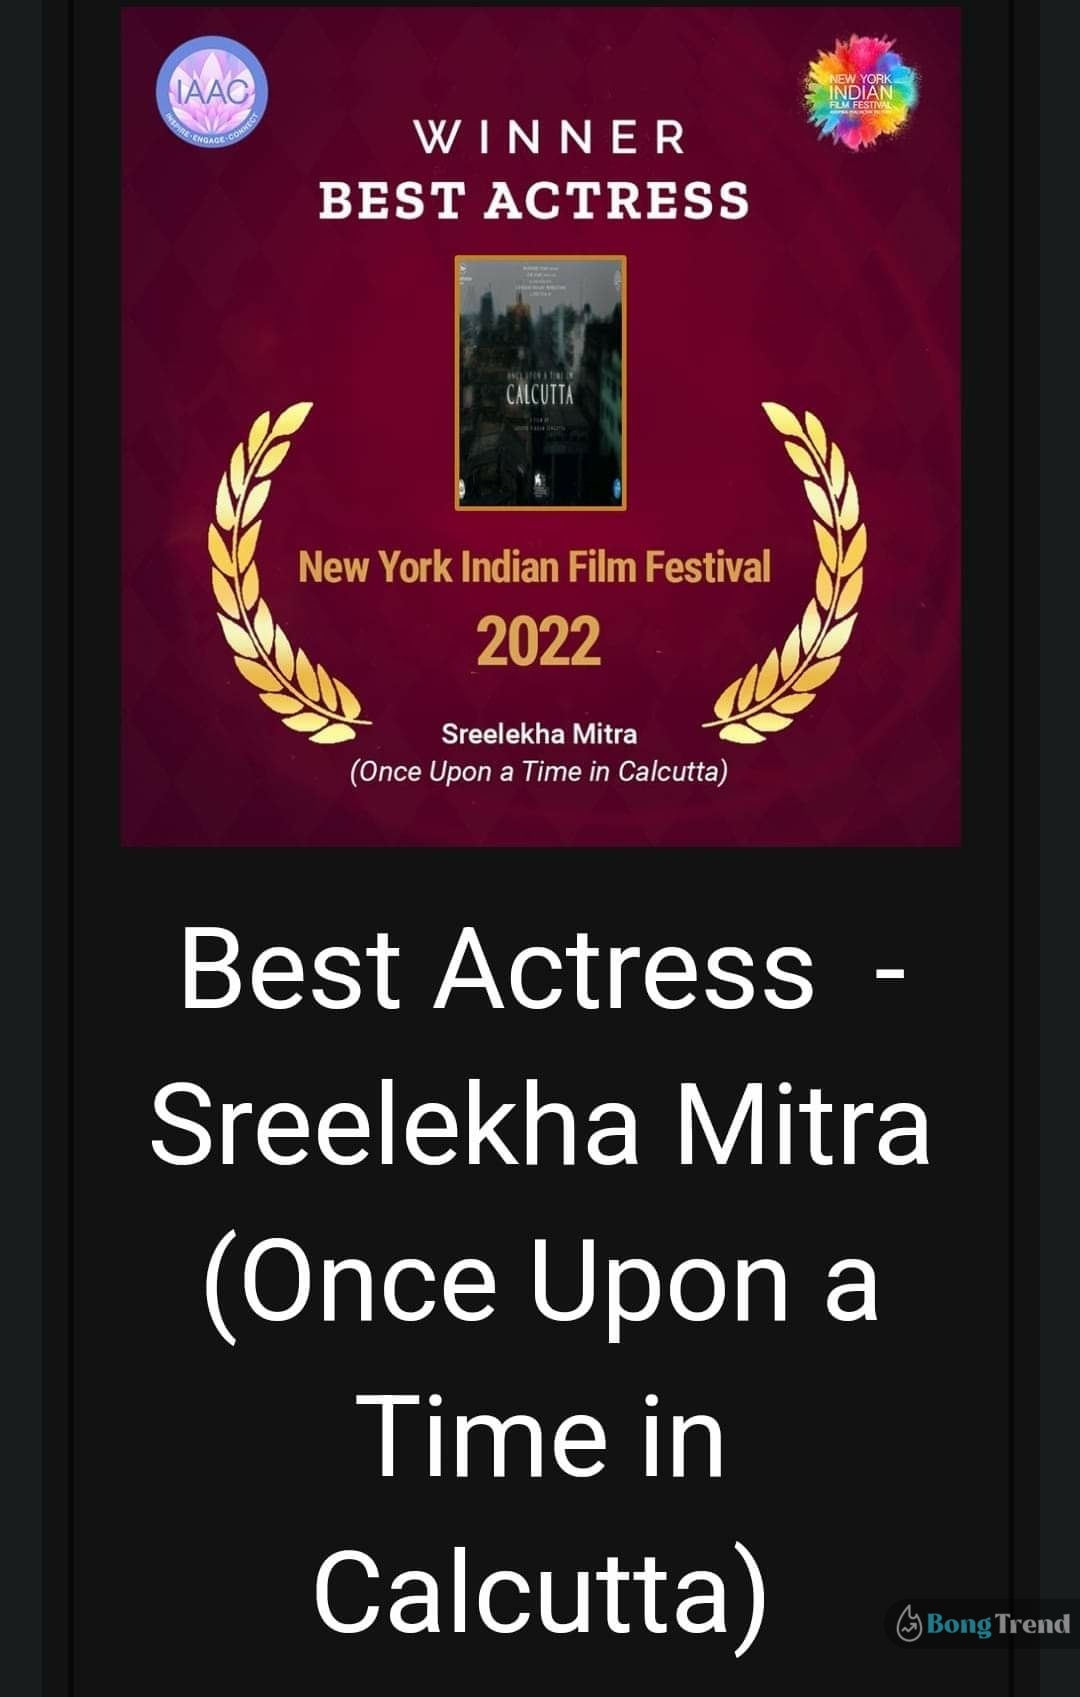 নিউ ইয়র্ক ইন্ডিয়ান ফিল্ম ফেস্টিভ্যাল,New York Indian Film Festival,শ্রীলেখা মিত্র,Sreelekha Mitra,Tollywood Actress,টলিউড অভিনেত্রী,সোশ্যাল মিডিয়া পোস্ট,Social Media Post,Best Actress,সেরা অভিনেত্রী